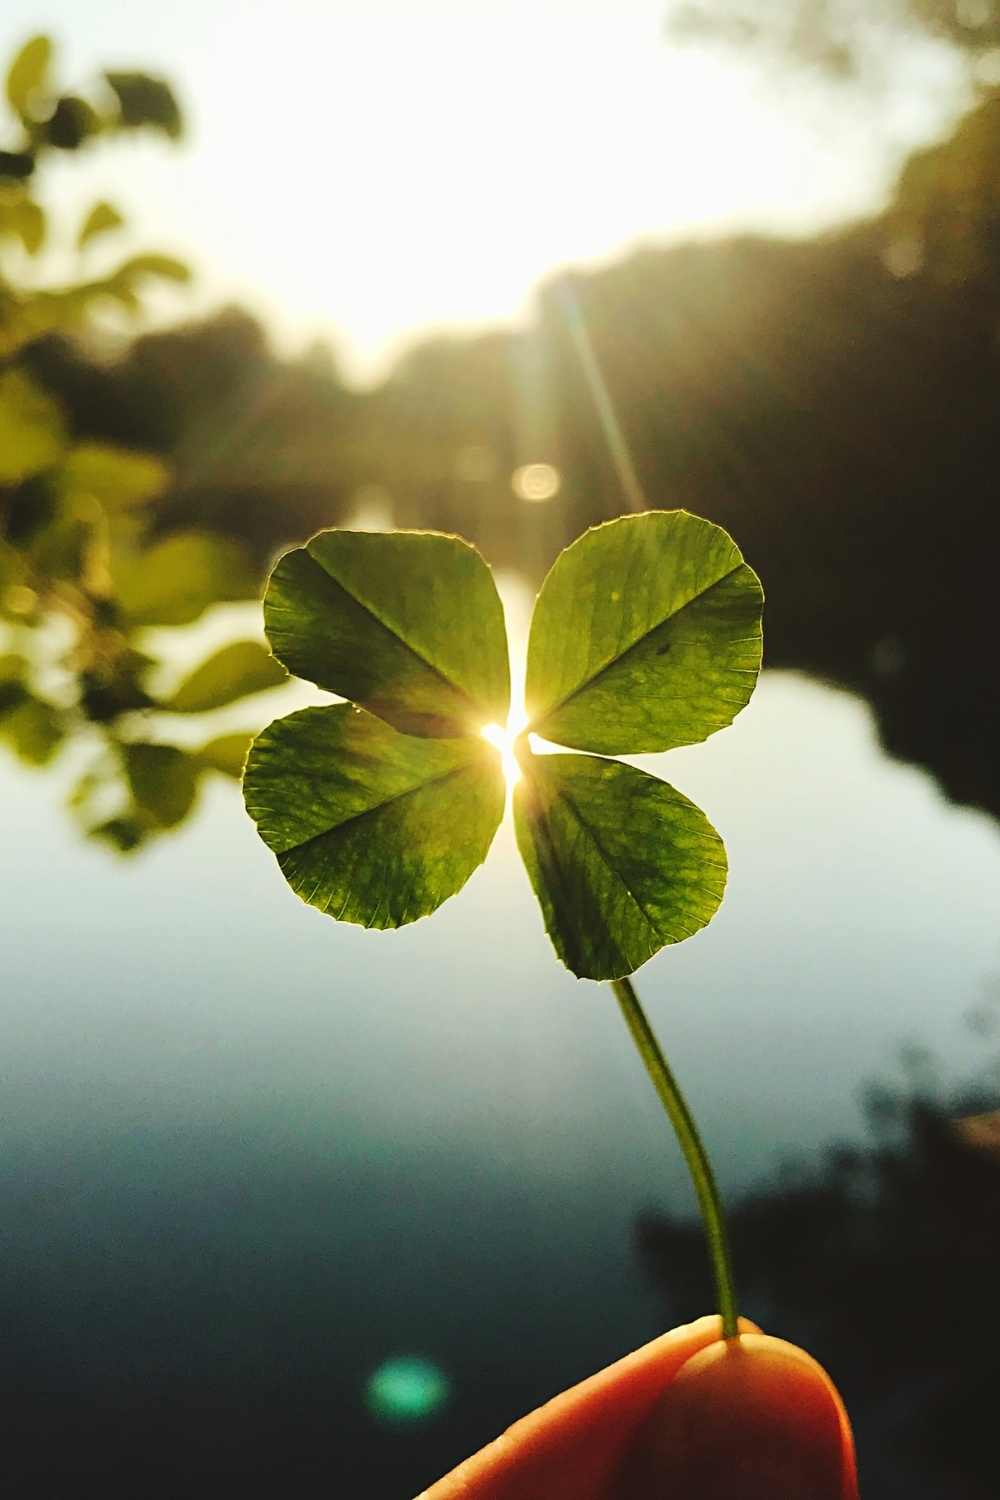 Four leaf clover, good luck symbols